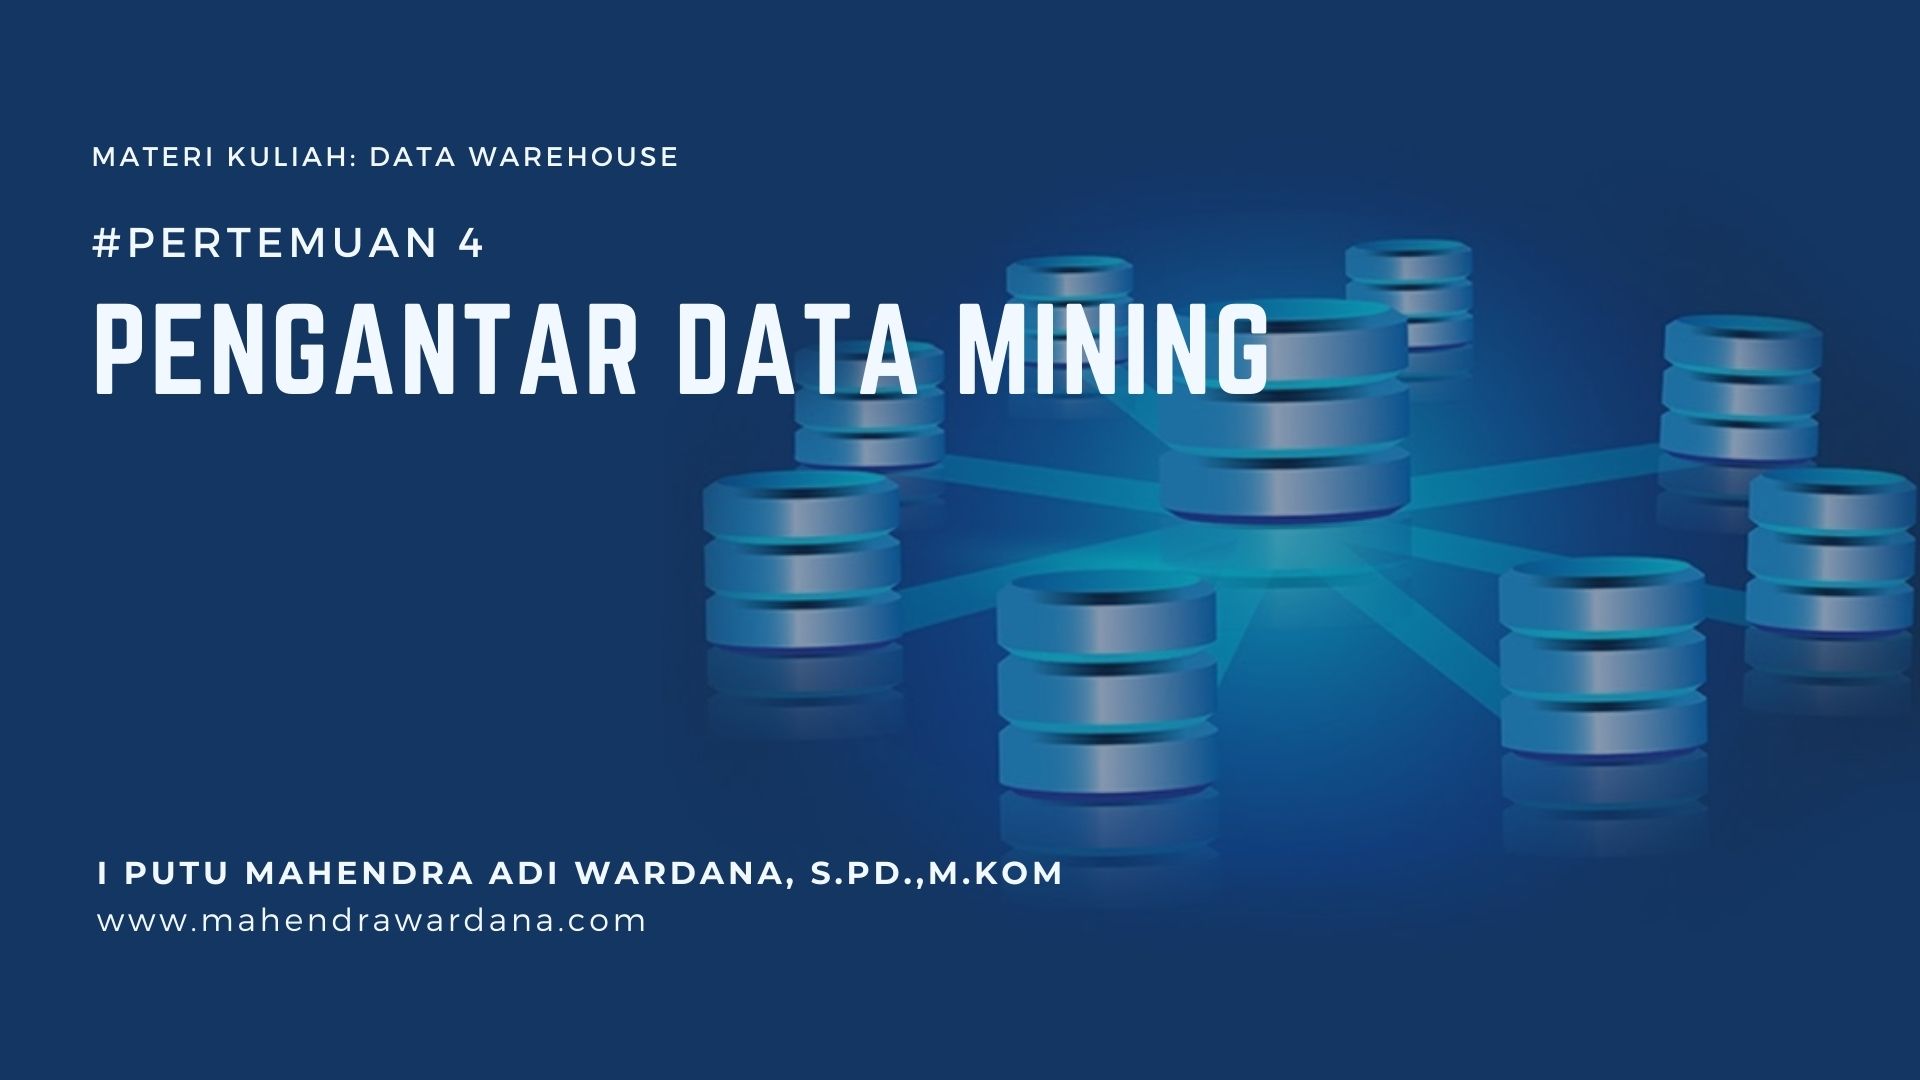 Pertemuan 4 - Pengantar Data Mining